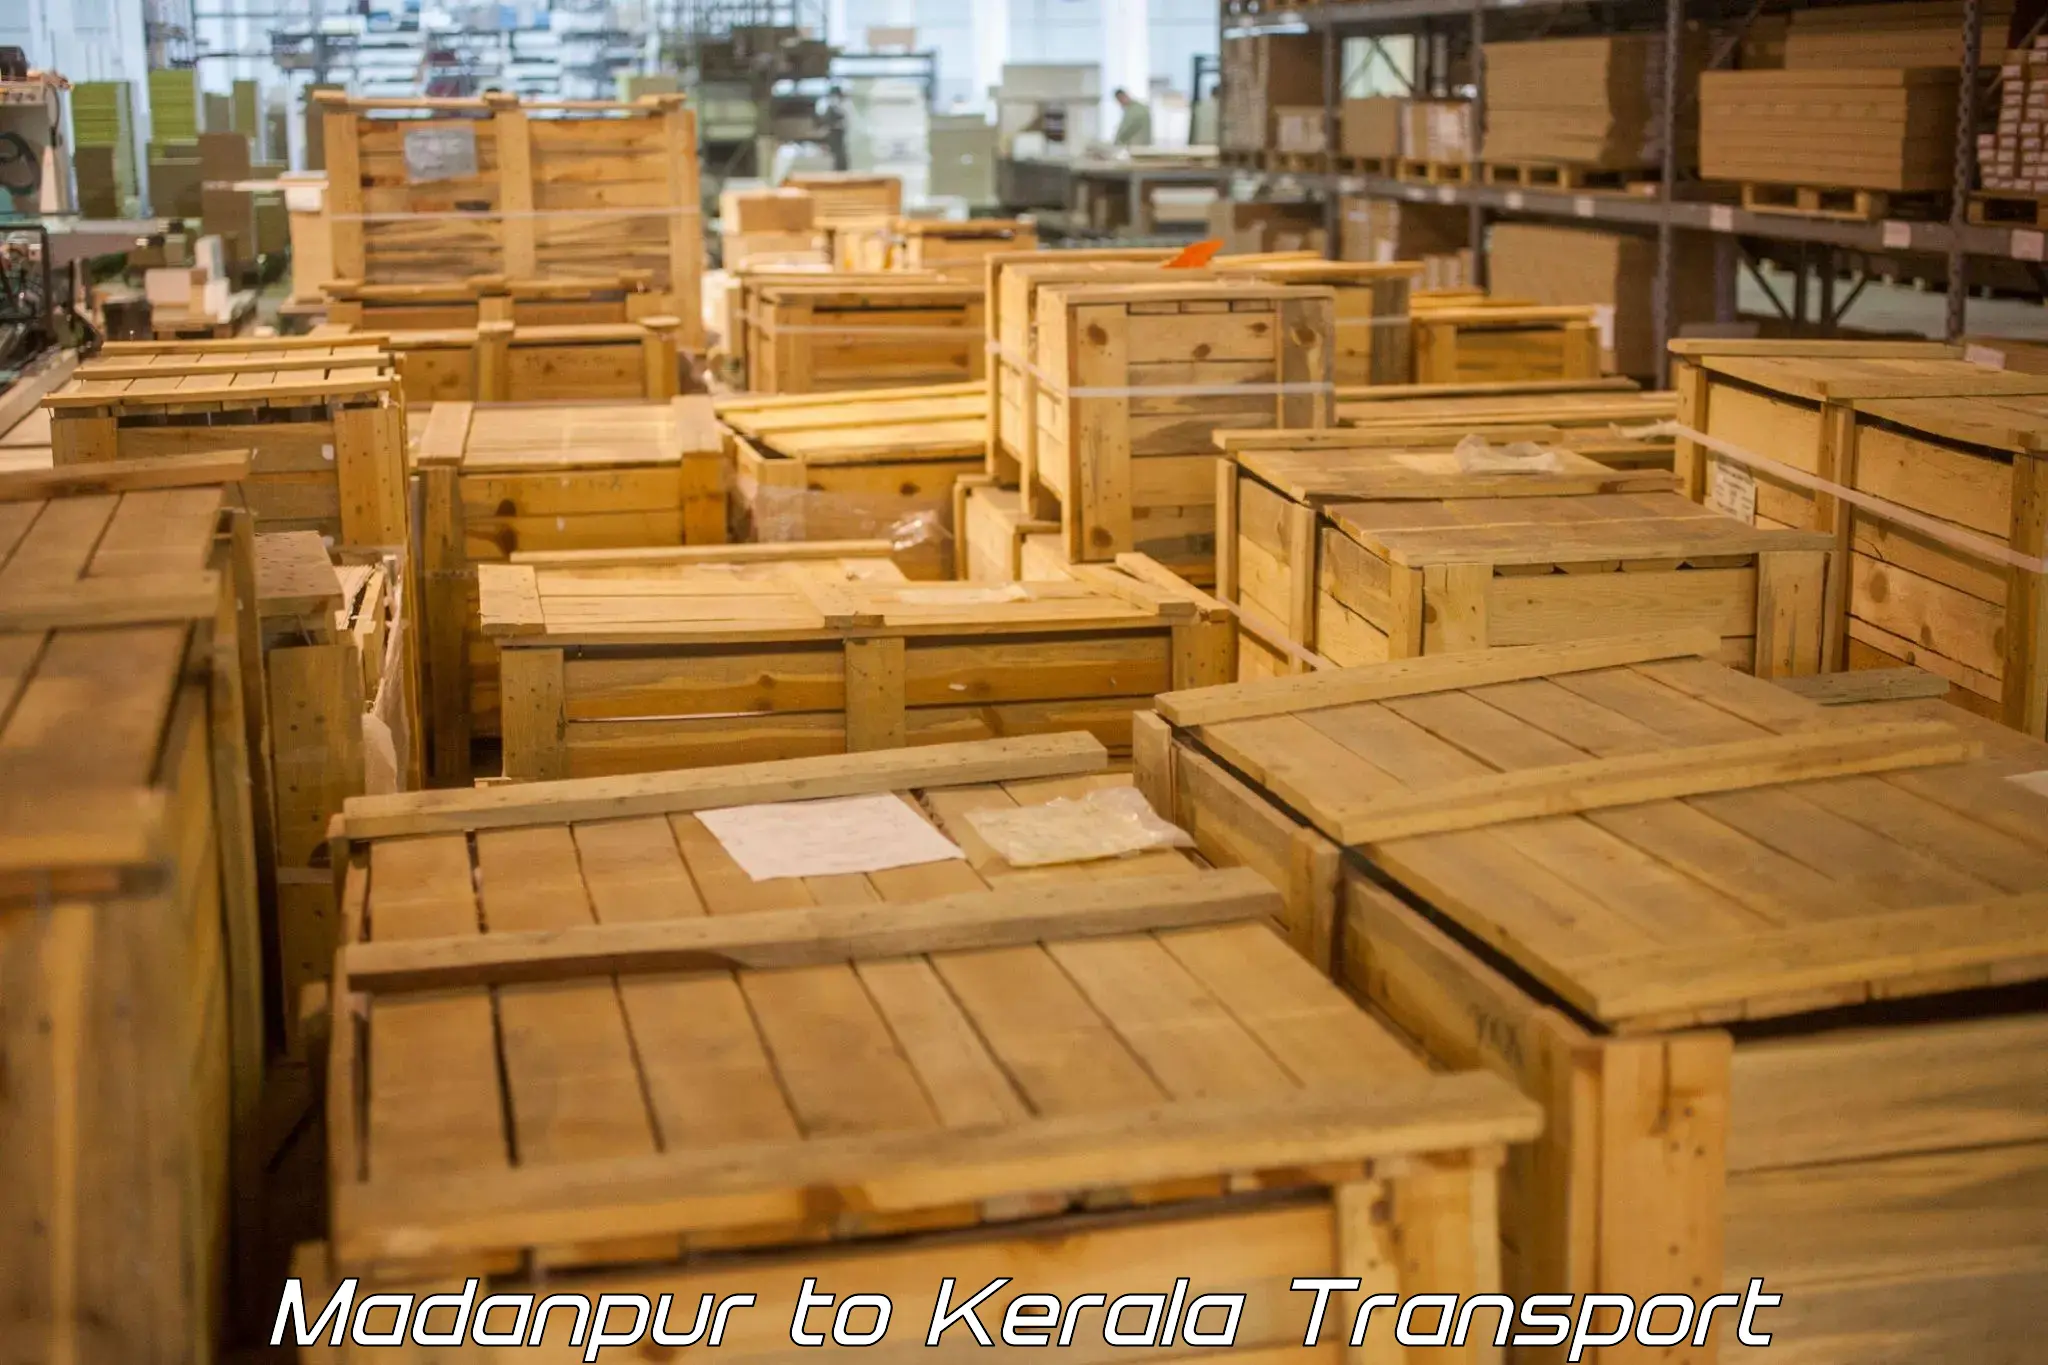 Container transport service Madanpur to Kazhakkoottam